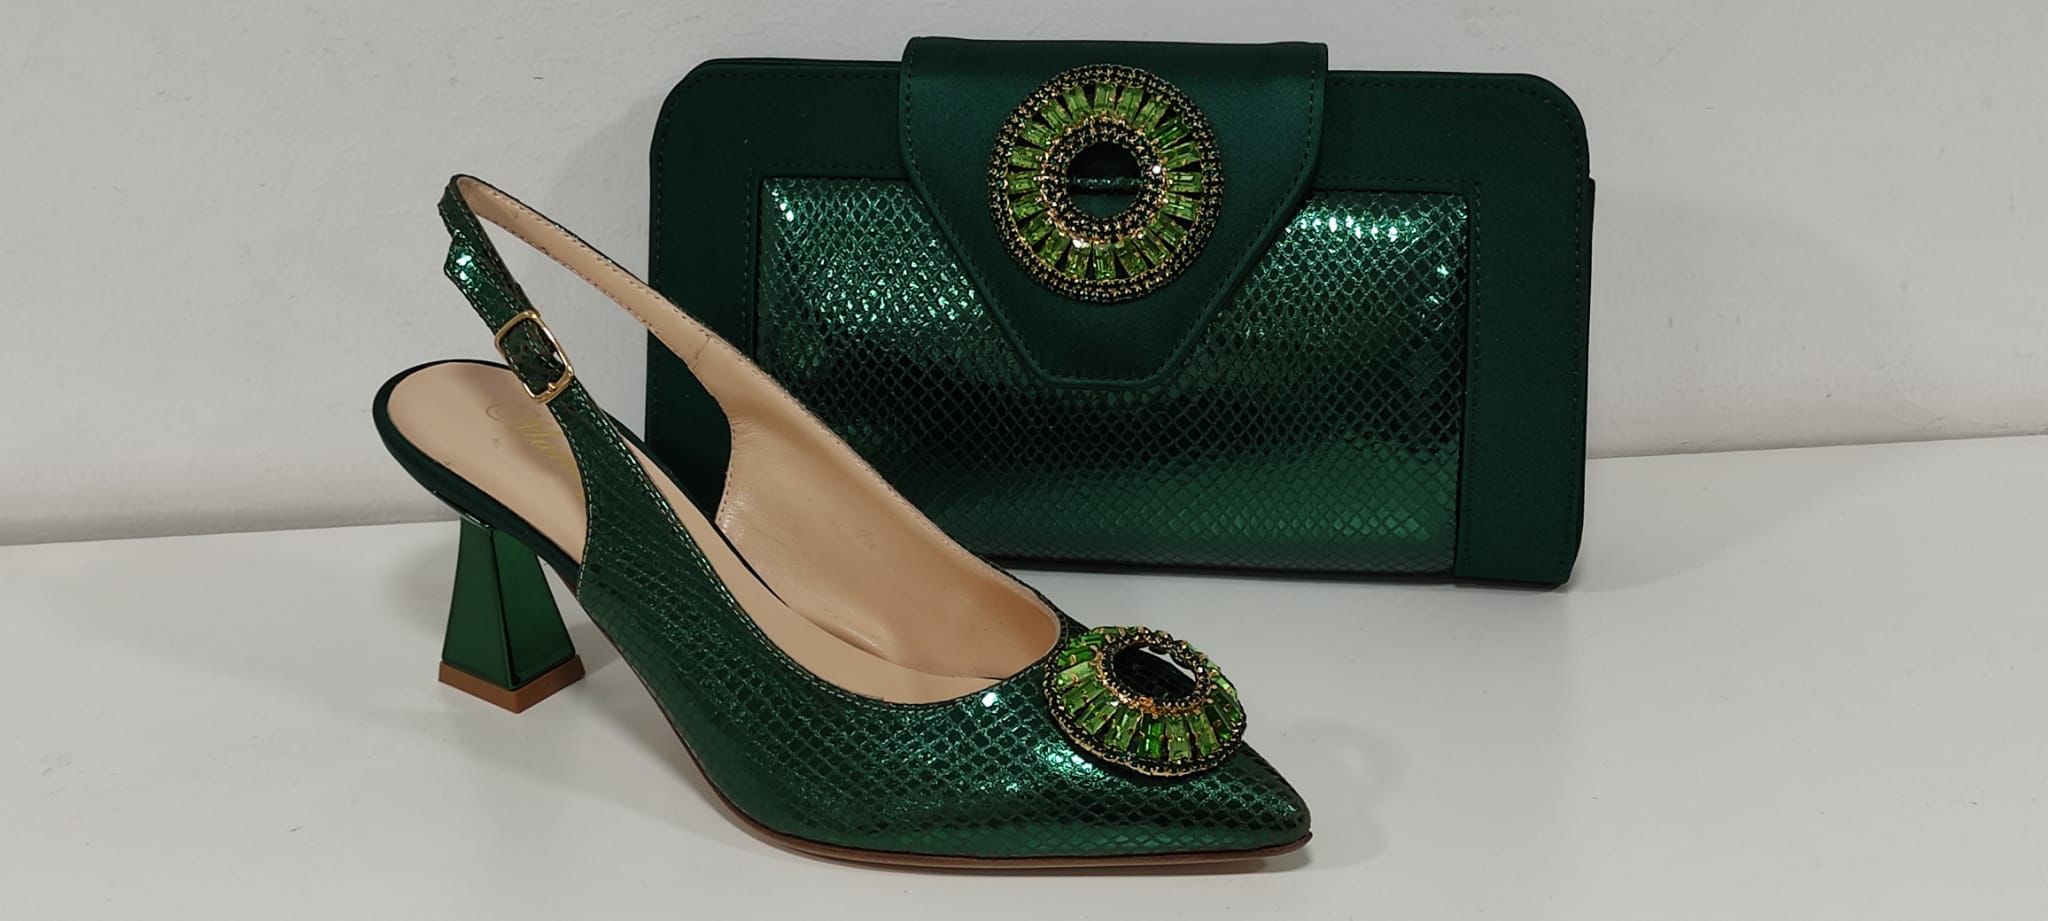 Real italian shoe and bag - Godshandfashion - Green size 43 US size 11-12